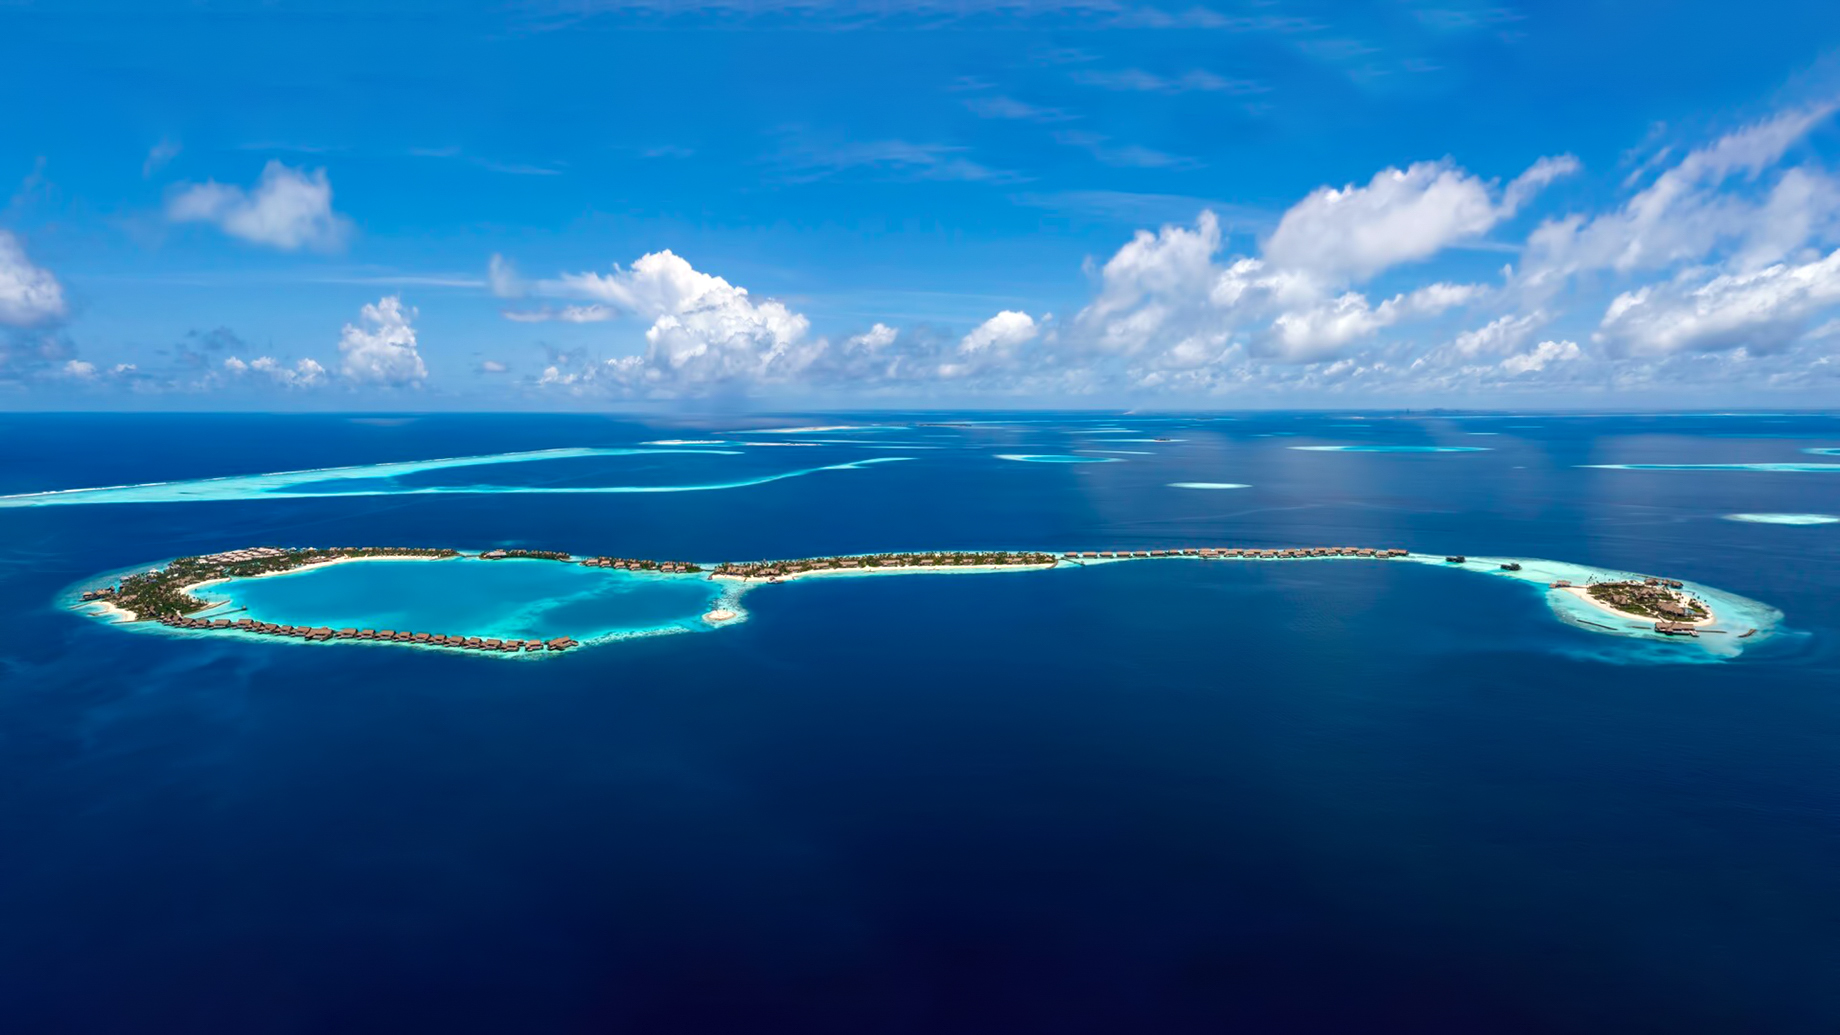 Waldorf Astoria Maldives Ithaafushi Luxury Resort - Ithaafushi Island, Maldives